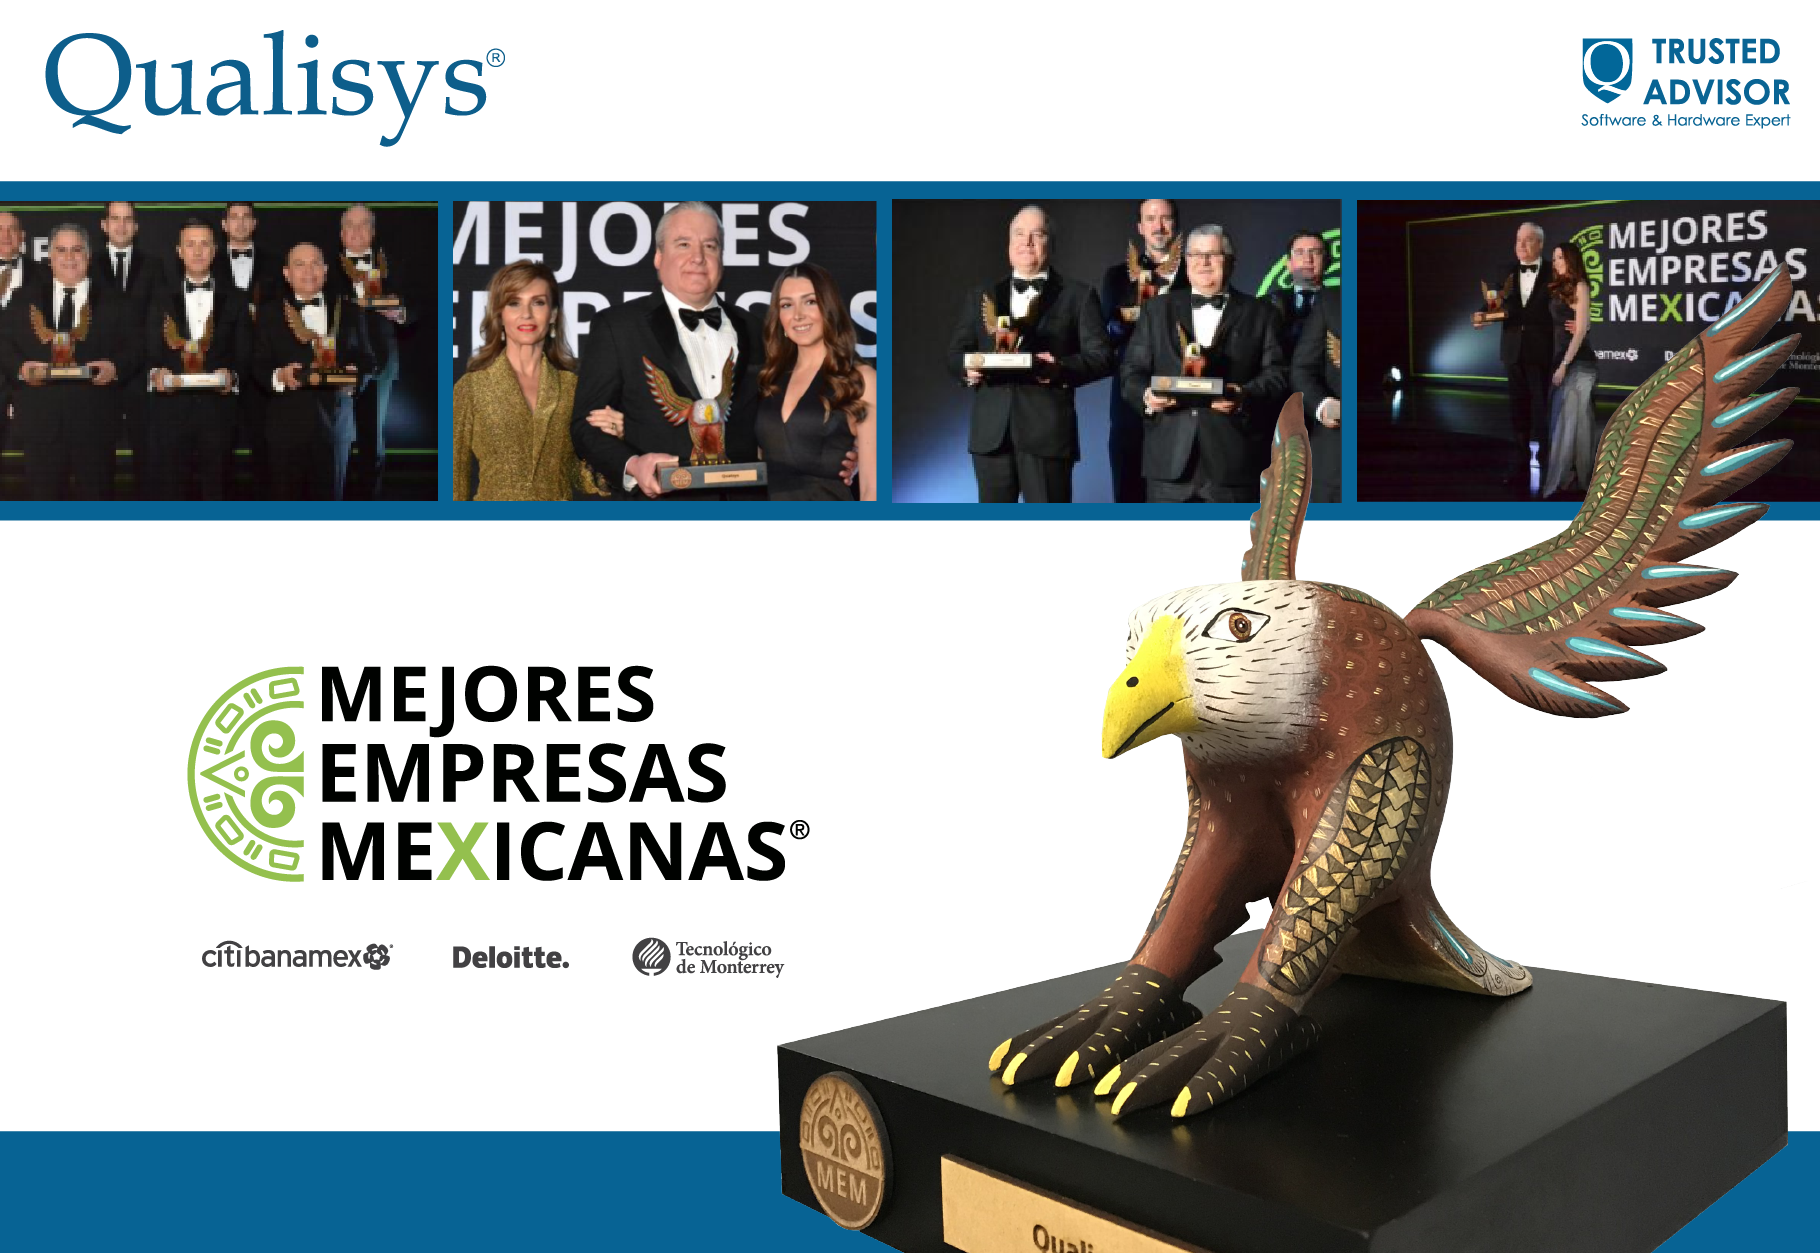 Una vez más somos una de Las Mejores Empresas Mexicanas 2019 - Image